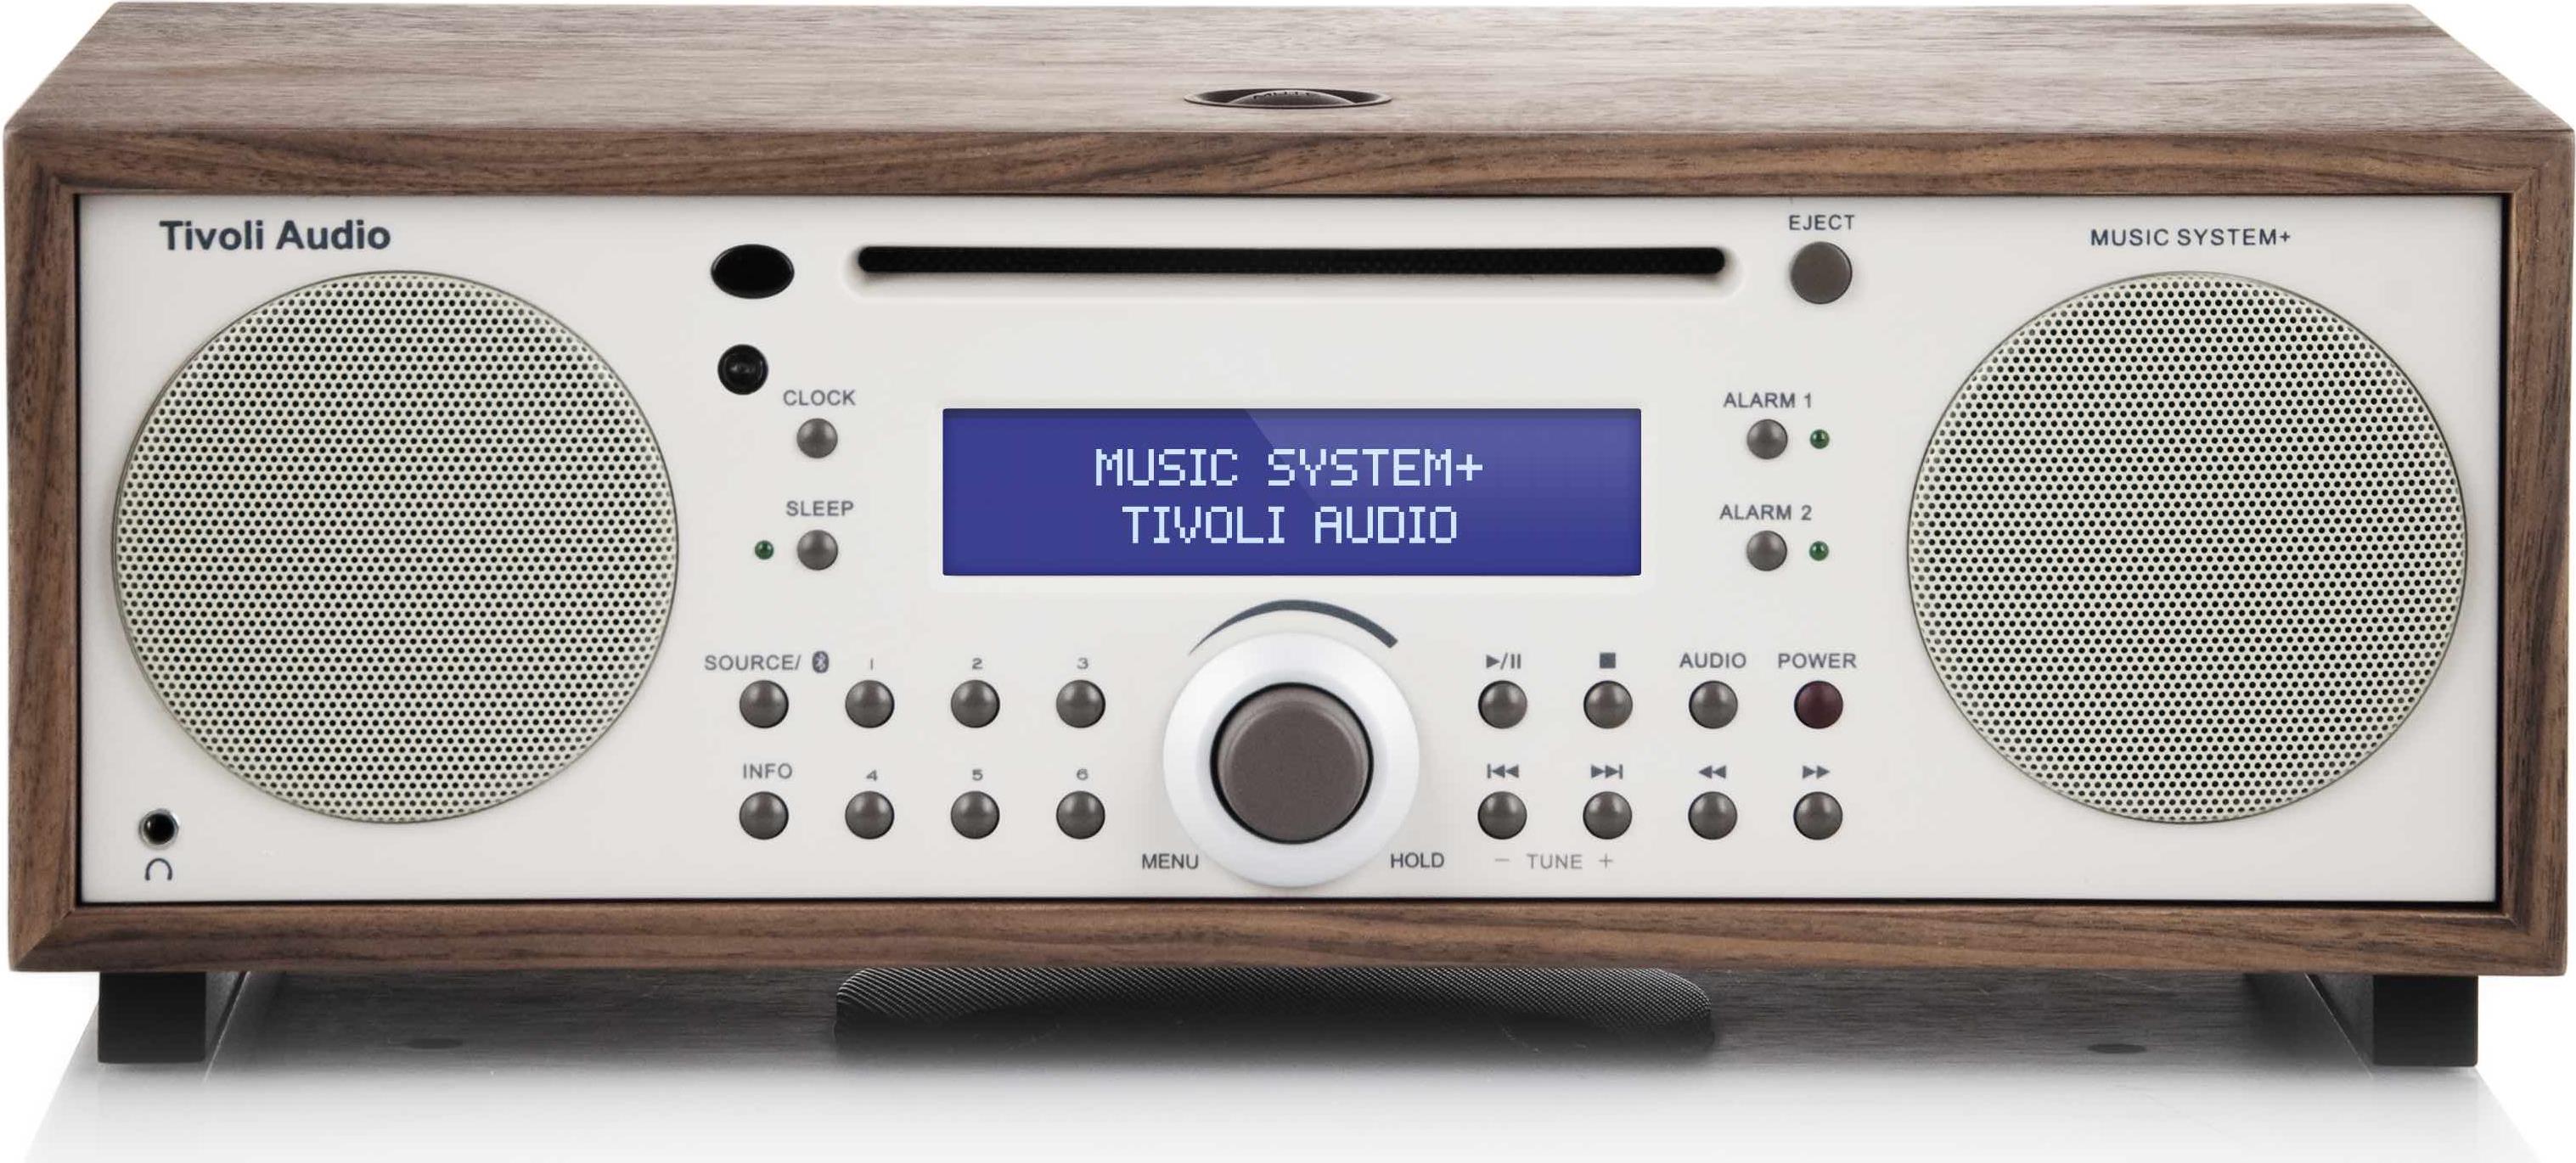 Tivoli Audio Music System BT - Digital - AM,FM - Spieler - CD,CD-R,CD-RW - Vorderseite - 13,3 cm (5.25